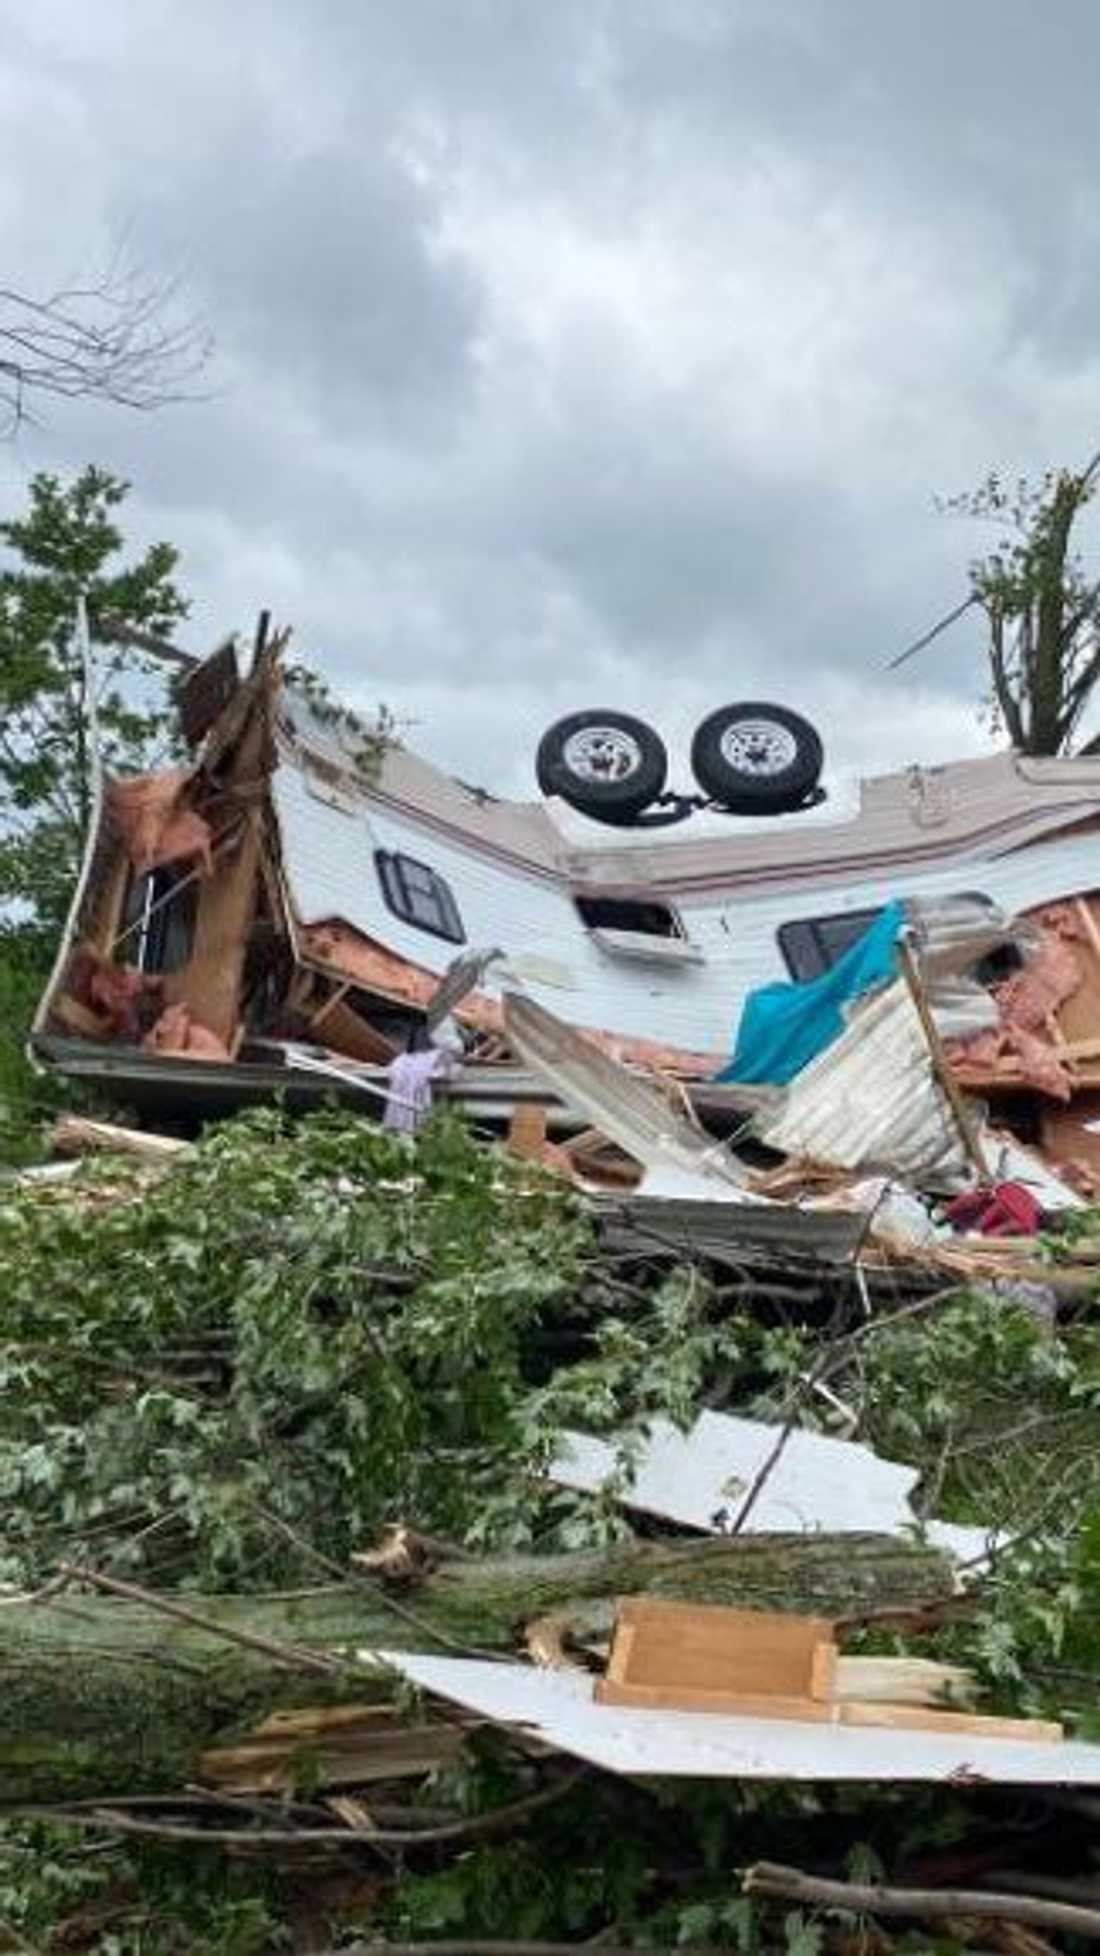 آثار الدمار الذي تسبب به إعصار في ميشيغن